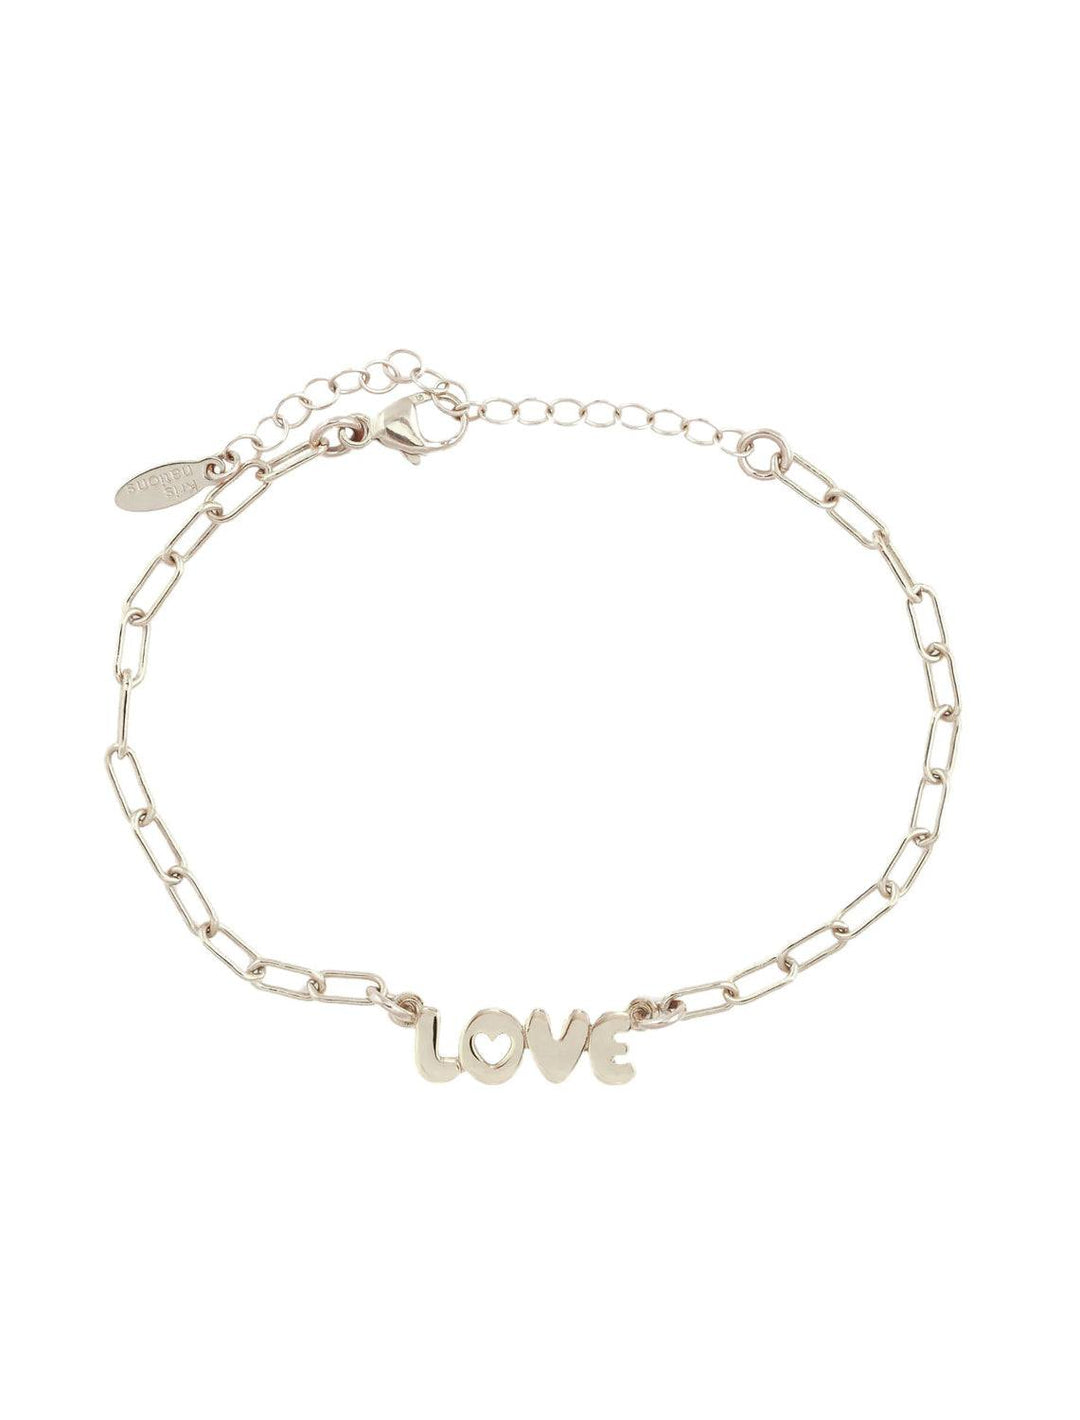 Kris Nations love bubble charm bracelet in silver - Twigs